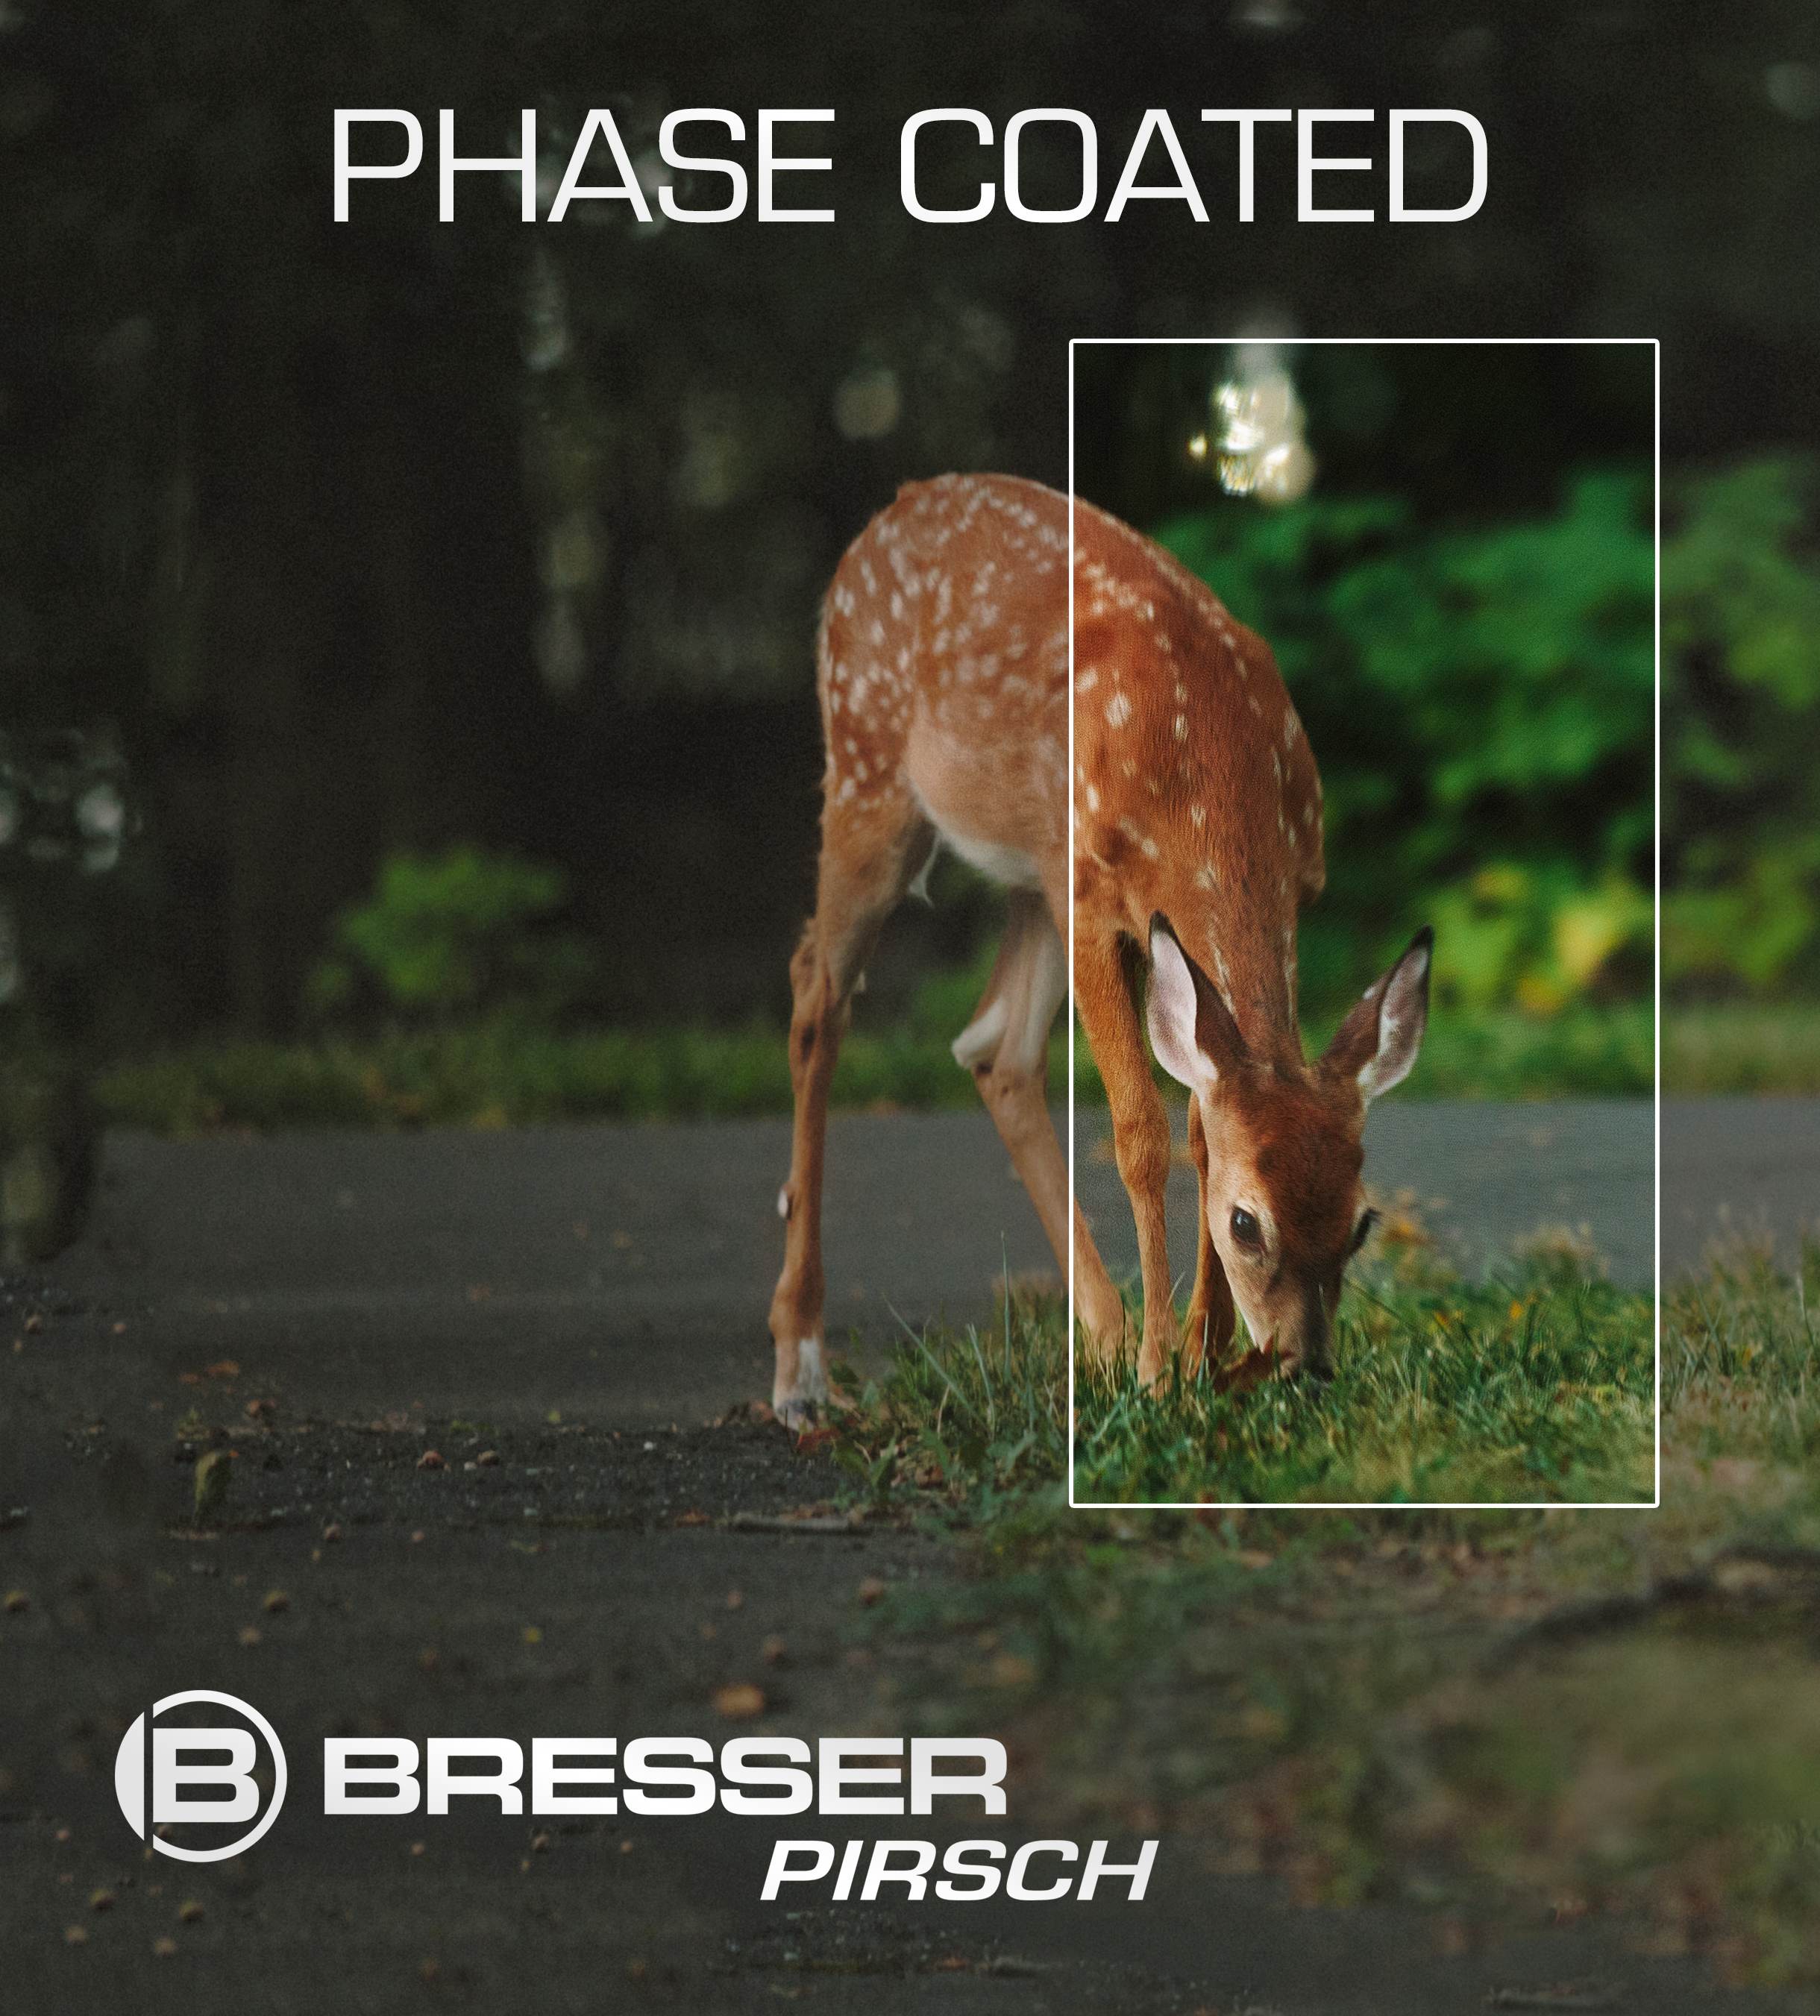 BRESSER Pirsch jumelles 10x26 Phase Coating